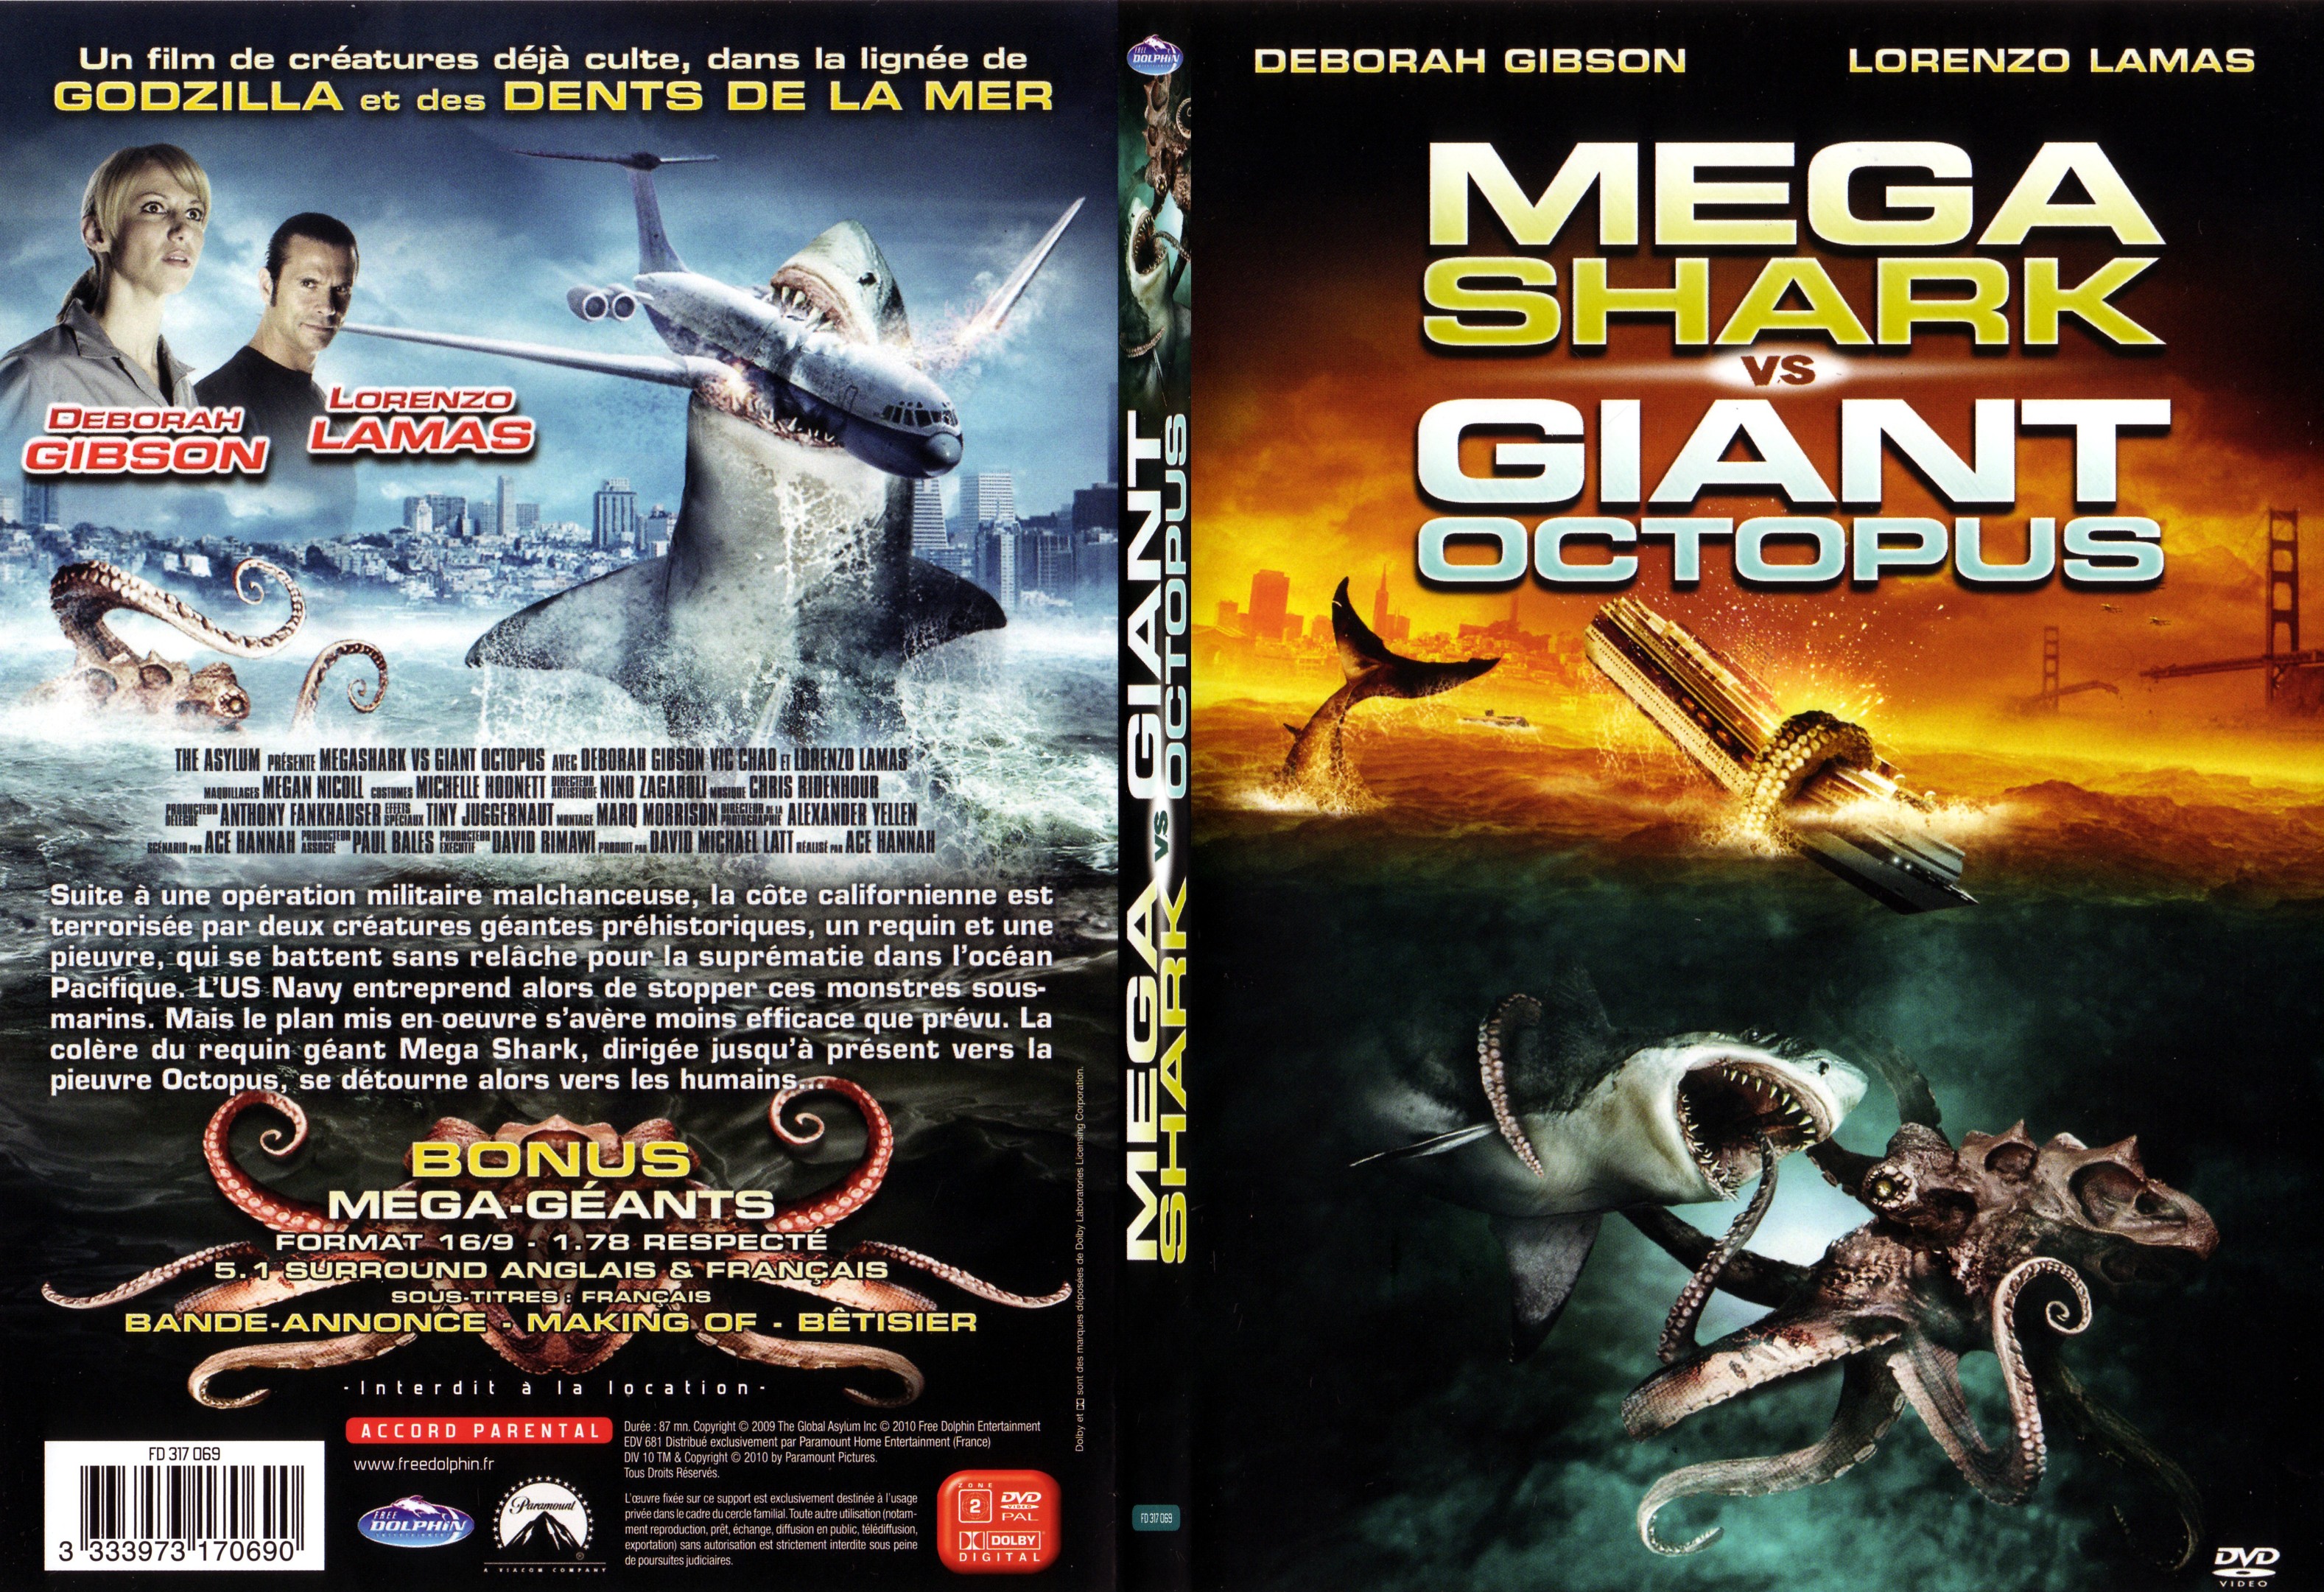 Jaquette DVD Mega shark vs Giant octopus - SLIM